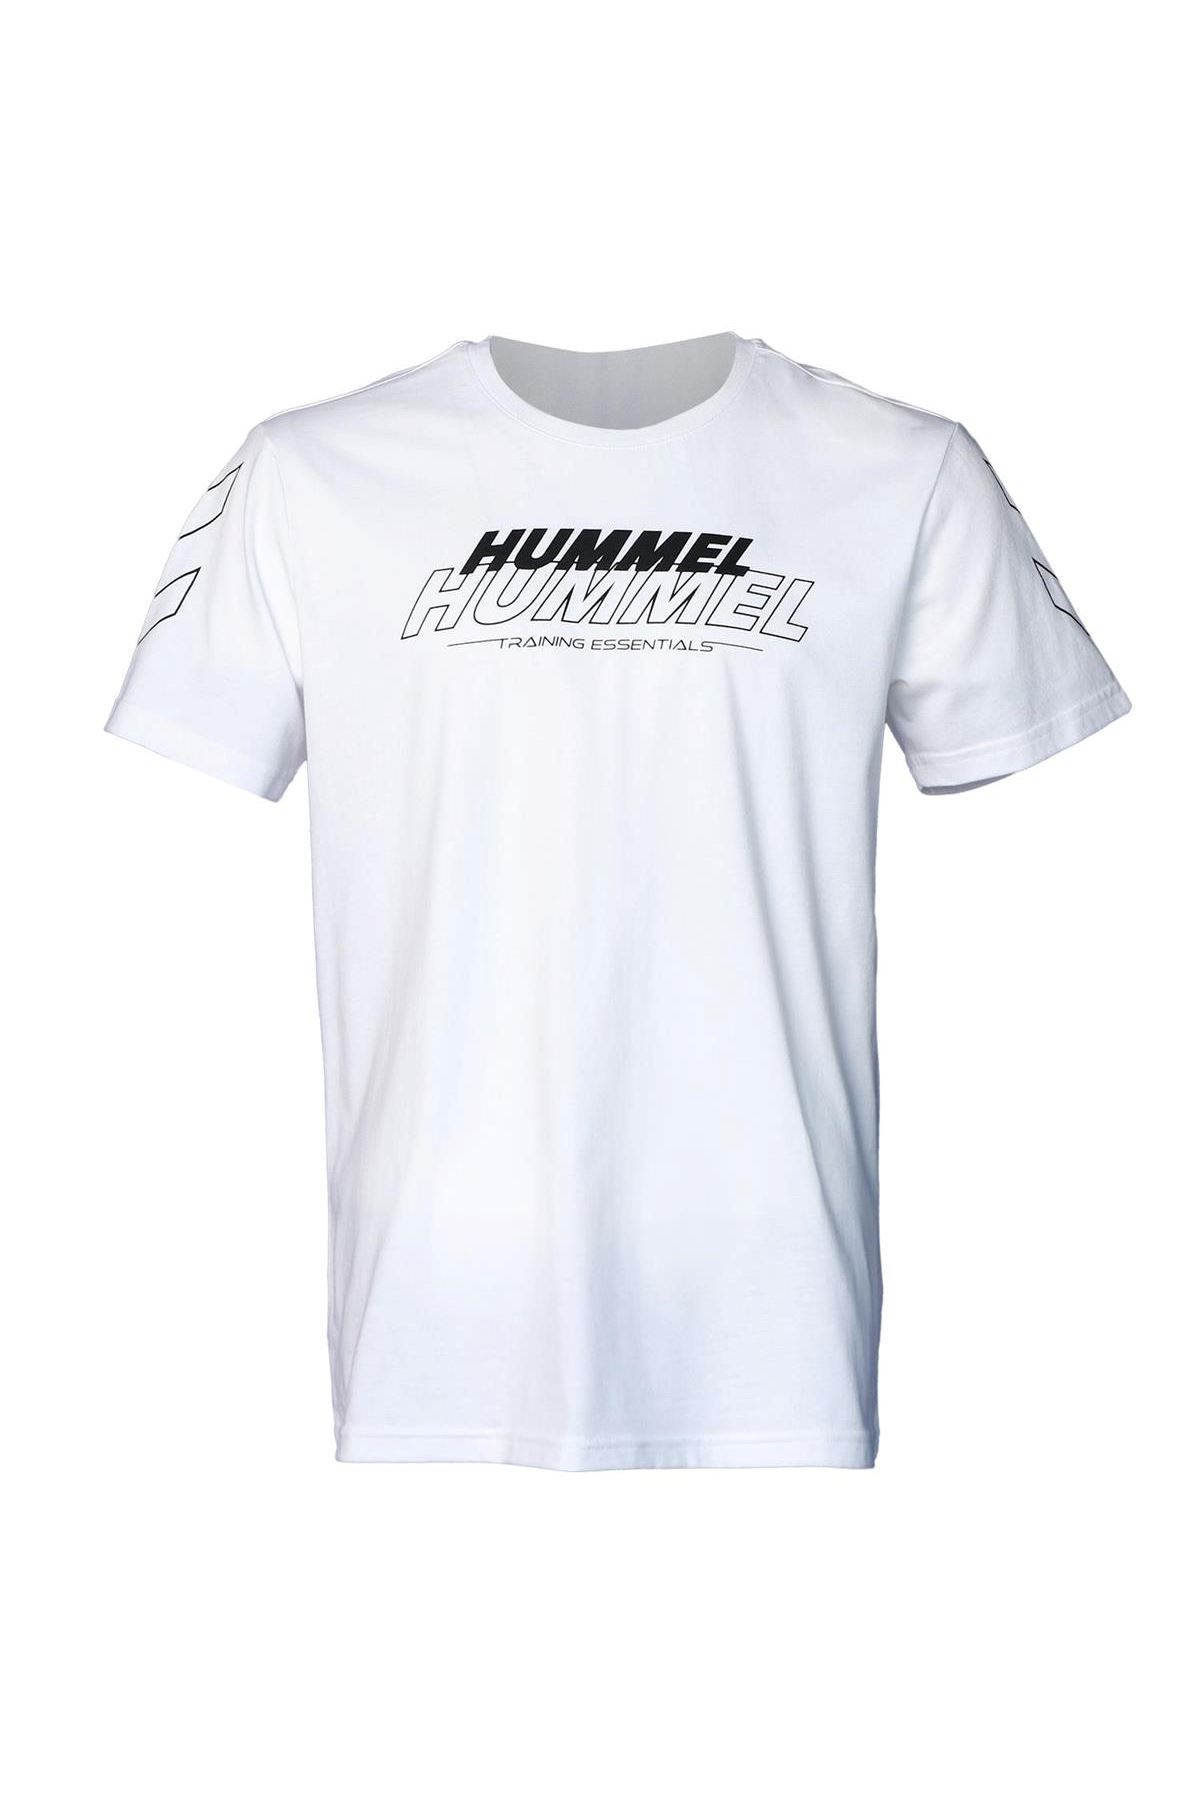 Hummel Hmlt-Te Jeff Cotton T-Shırt Erkek Beyaz Tişört - 911689-9001